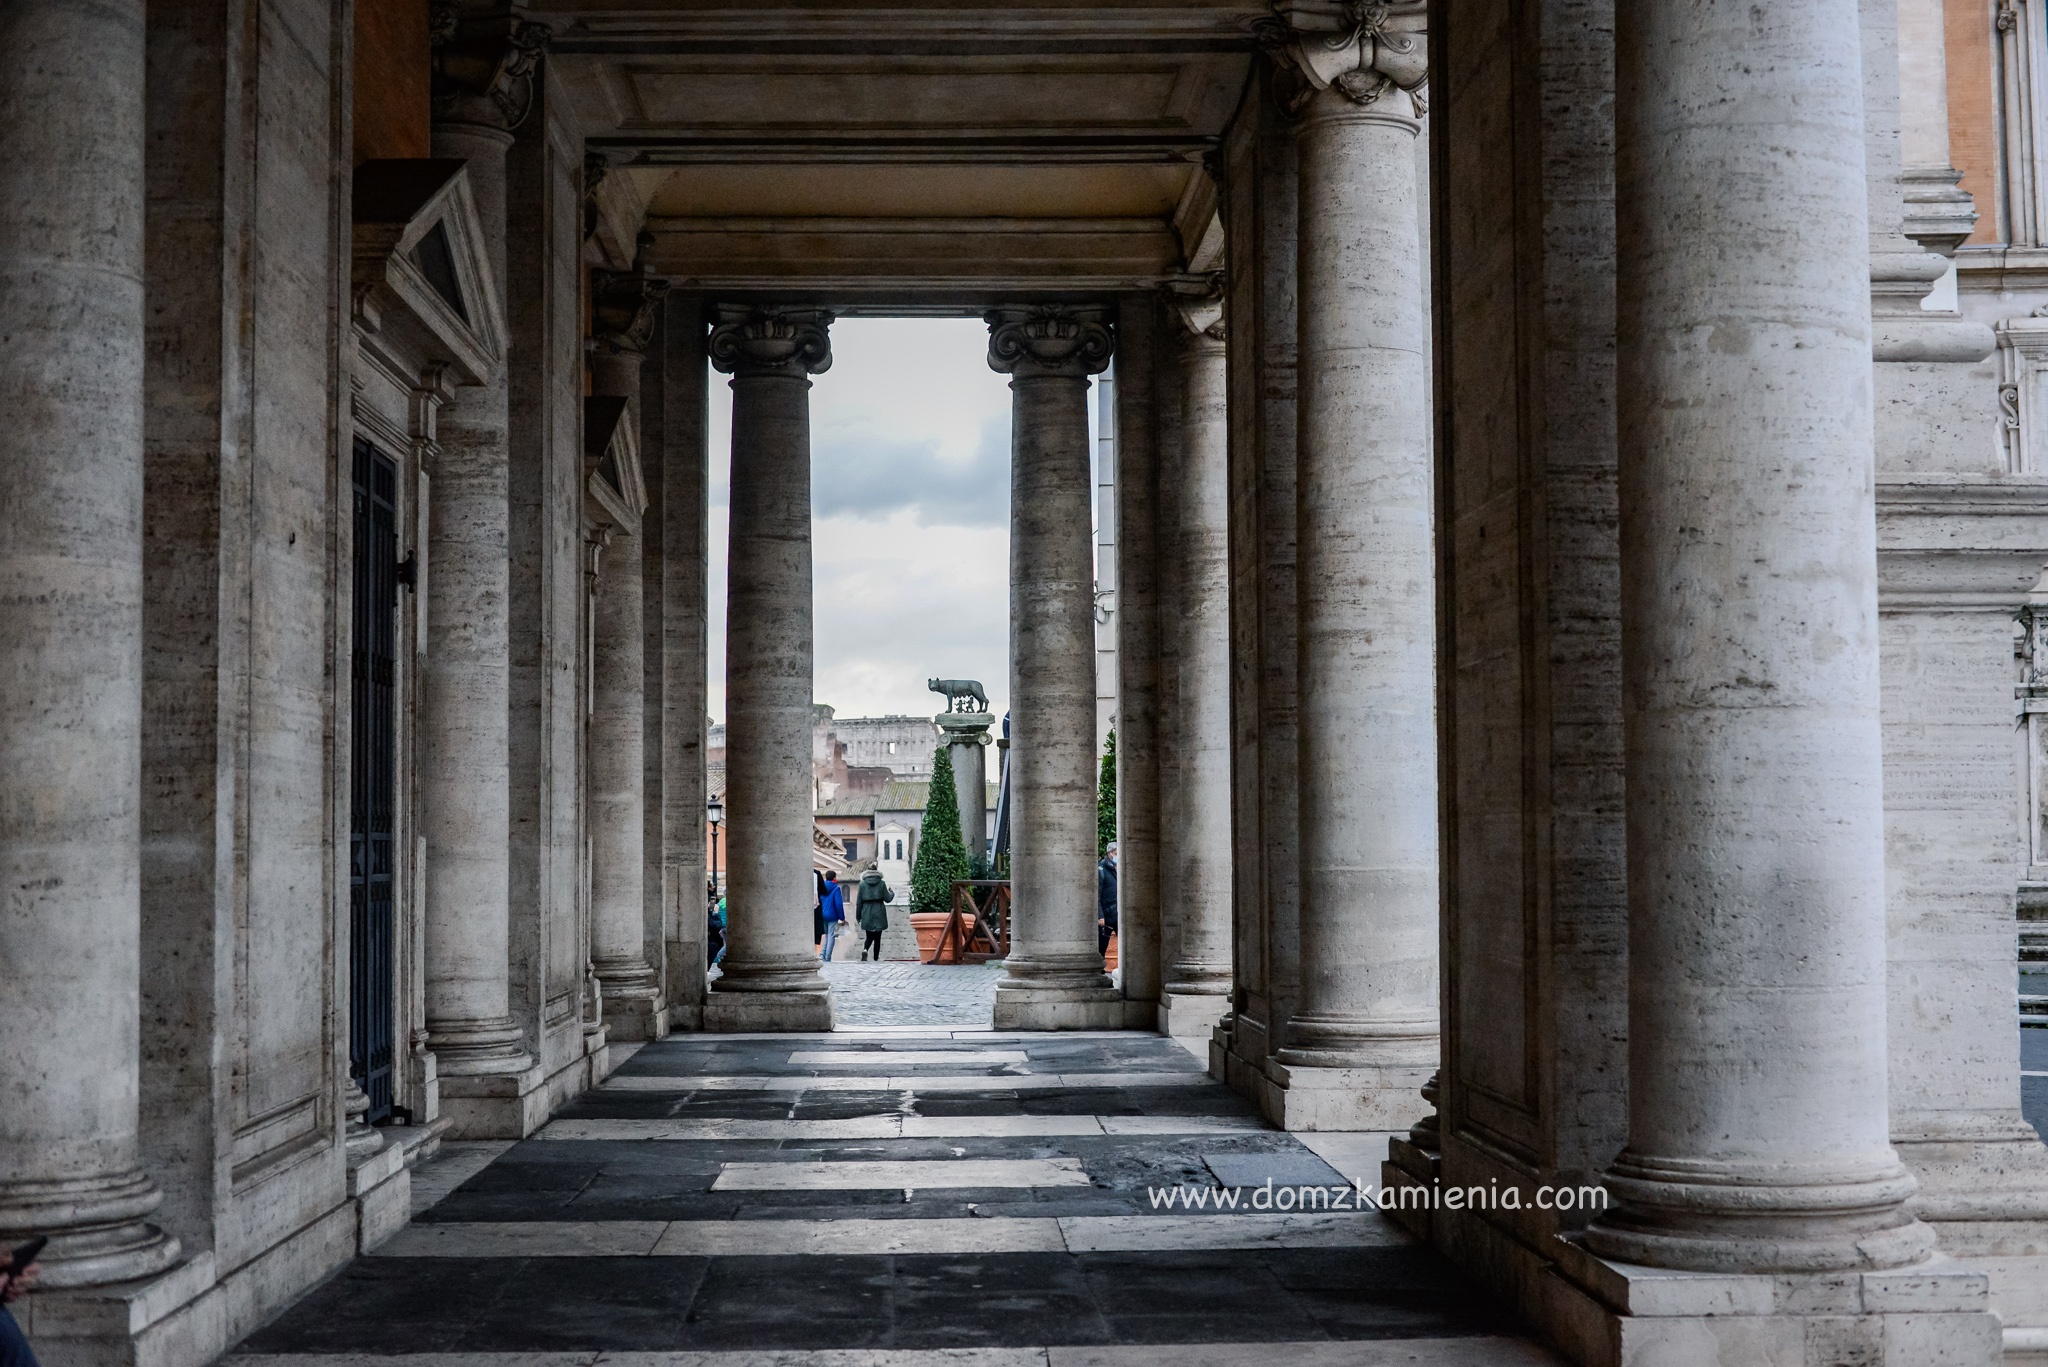 Jeden dzień w Rzymie, Dom z Kamienia blog